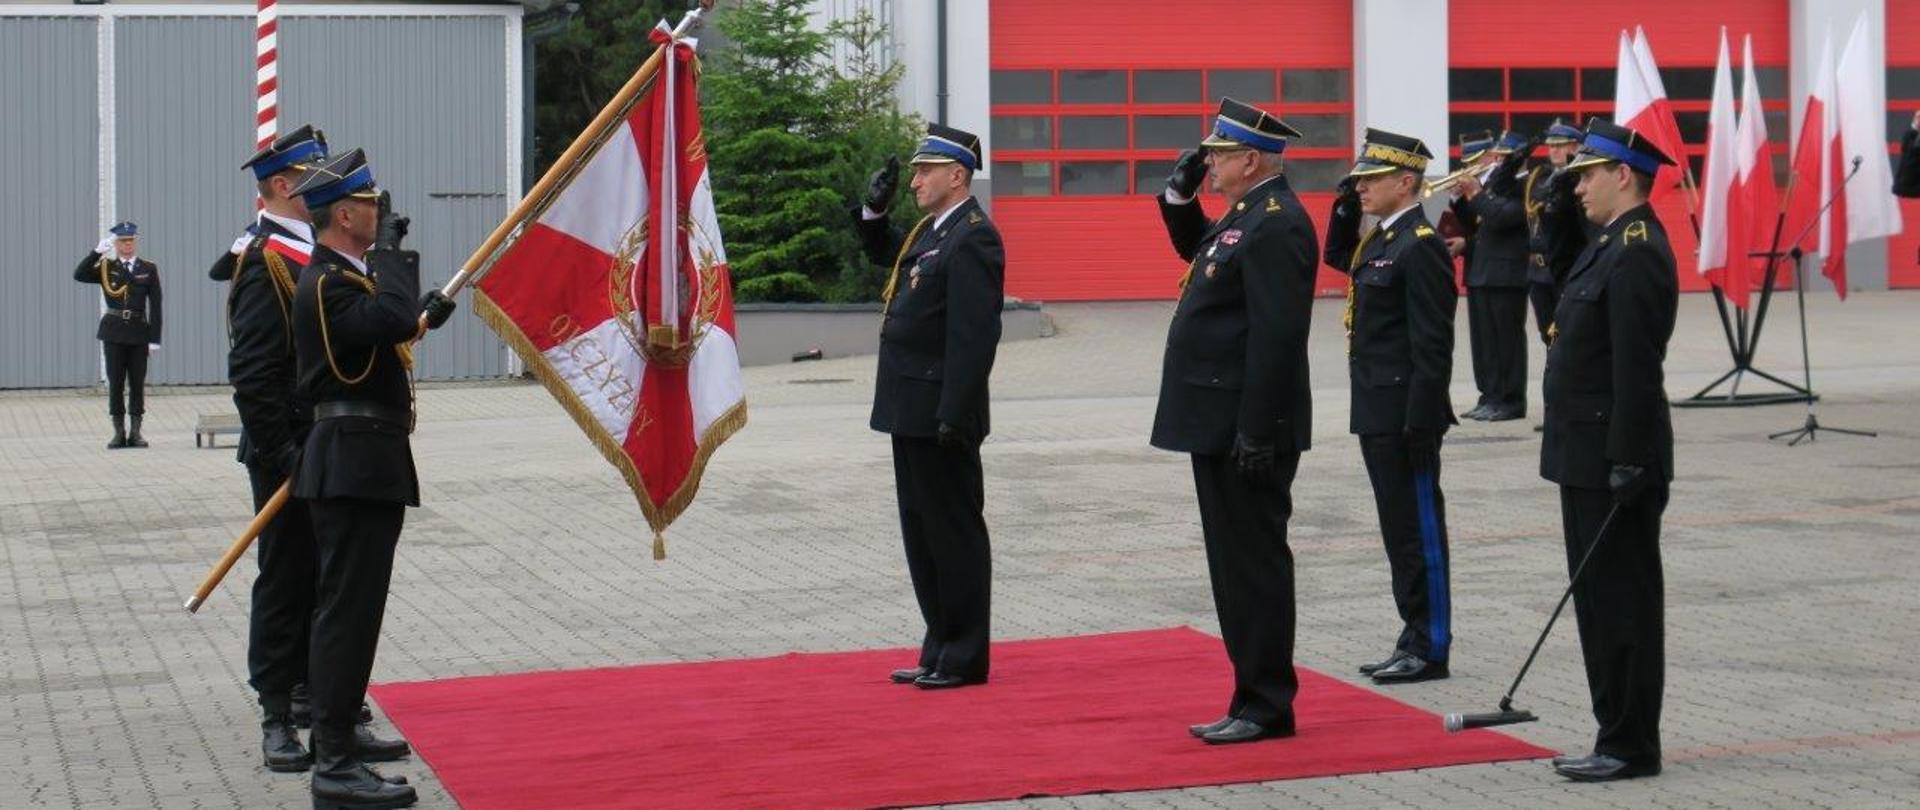 Powołanie małopolskiego komendanta wojewódzkiego PSP – na zdjęciu strażacy salutują do sztandaru. Na drugim planie budynek komendy i drzwi garaży strażackich.